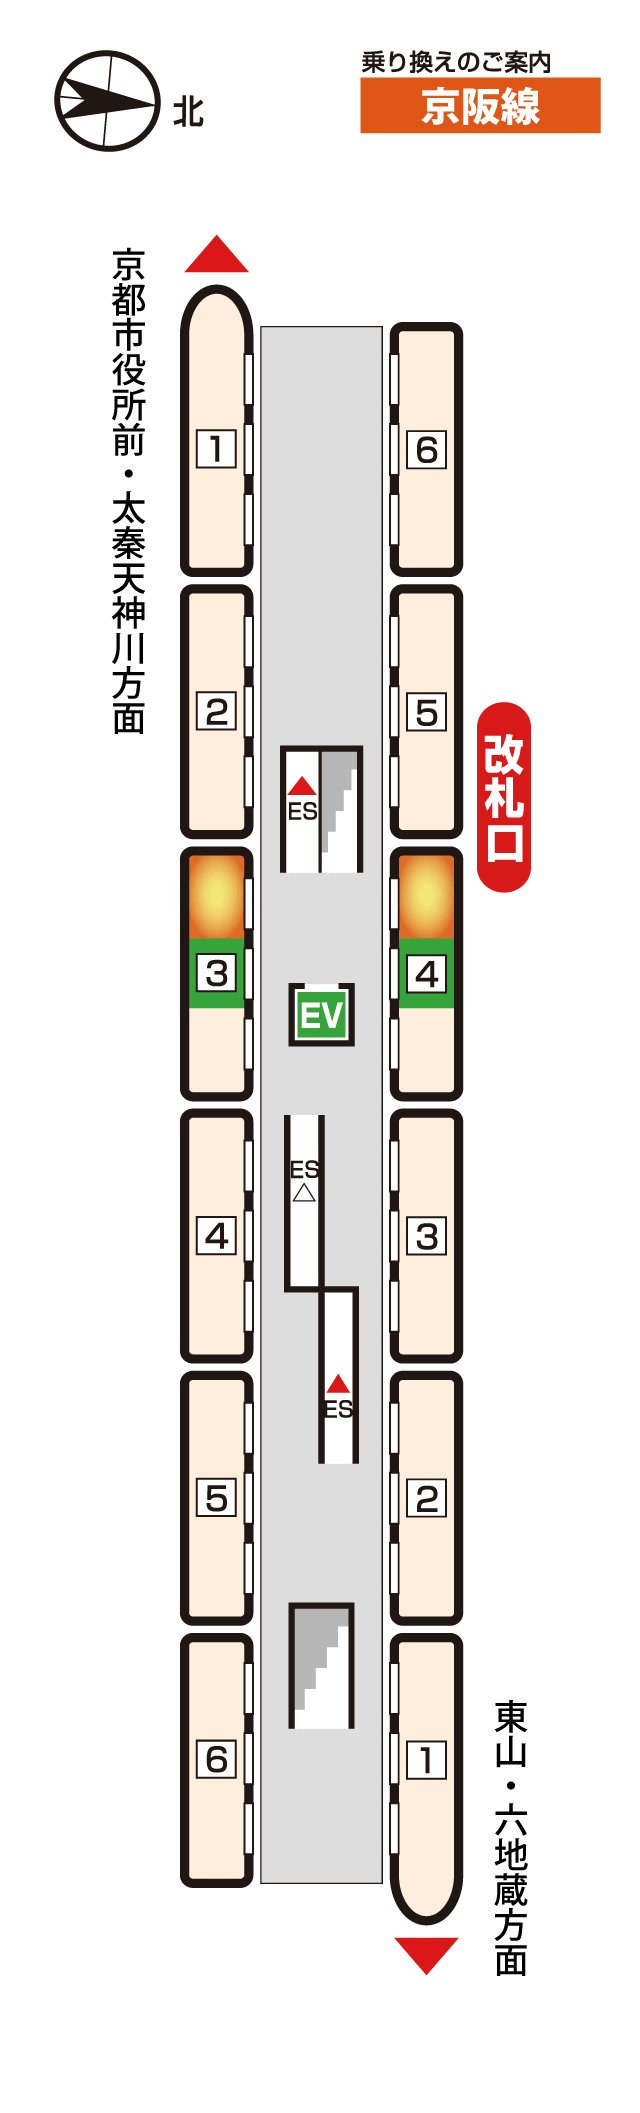 三条京阪駅のフォーム